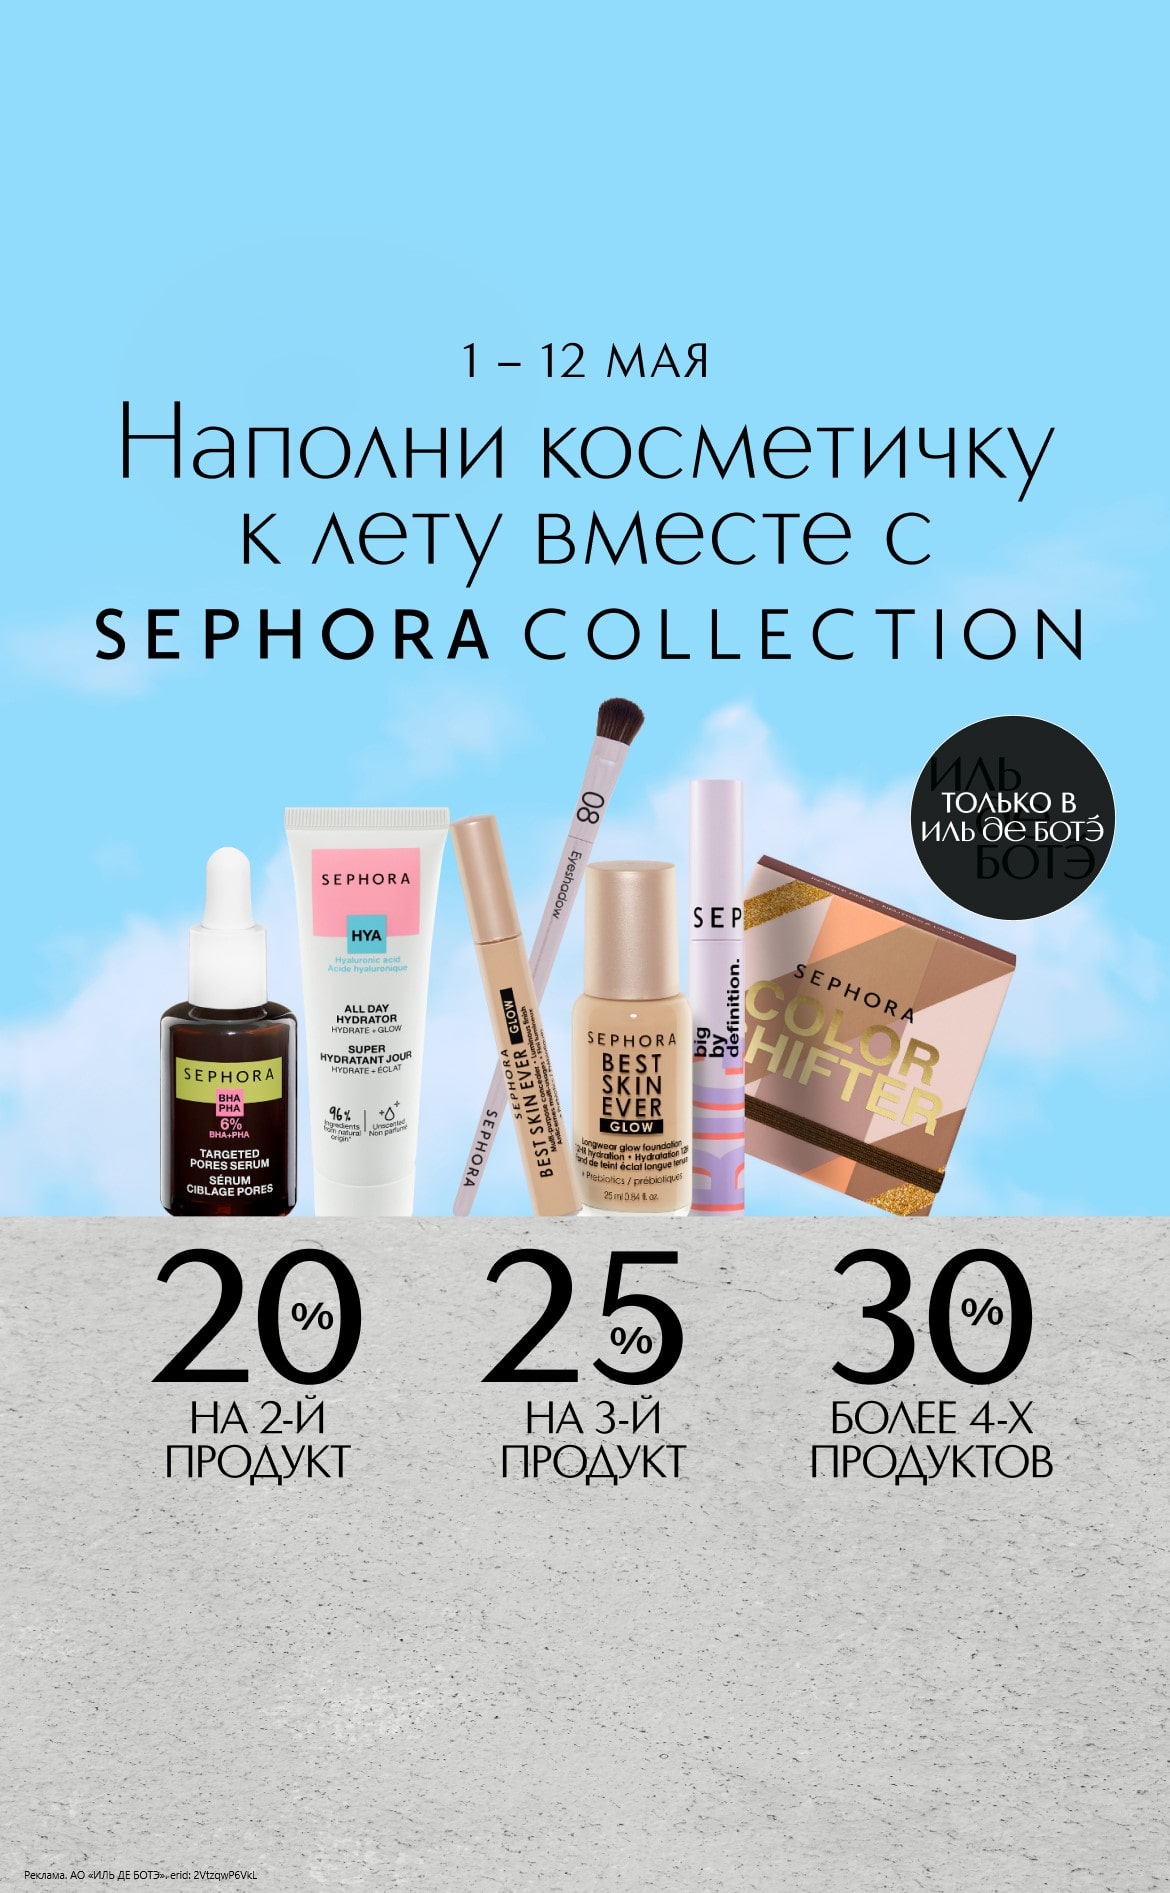 С 1 по 12 мая в интернет-магазине ИЛЬ ДЕ БОТЭ действует специальное предложение: чем больше продуктов Sephora Collection в корзине, тем больше экономия.